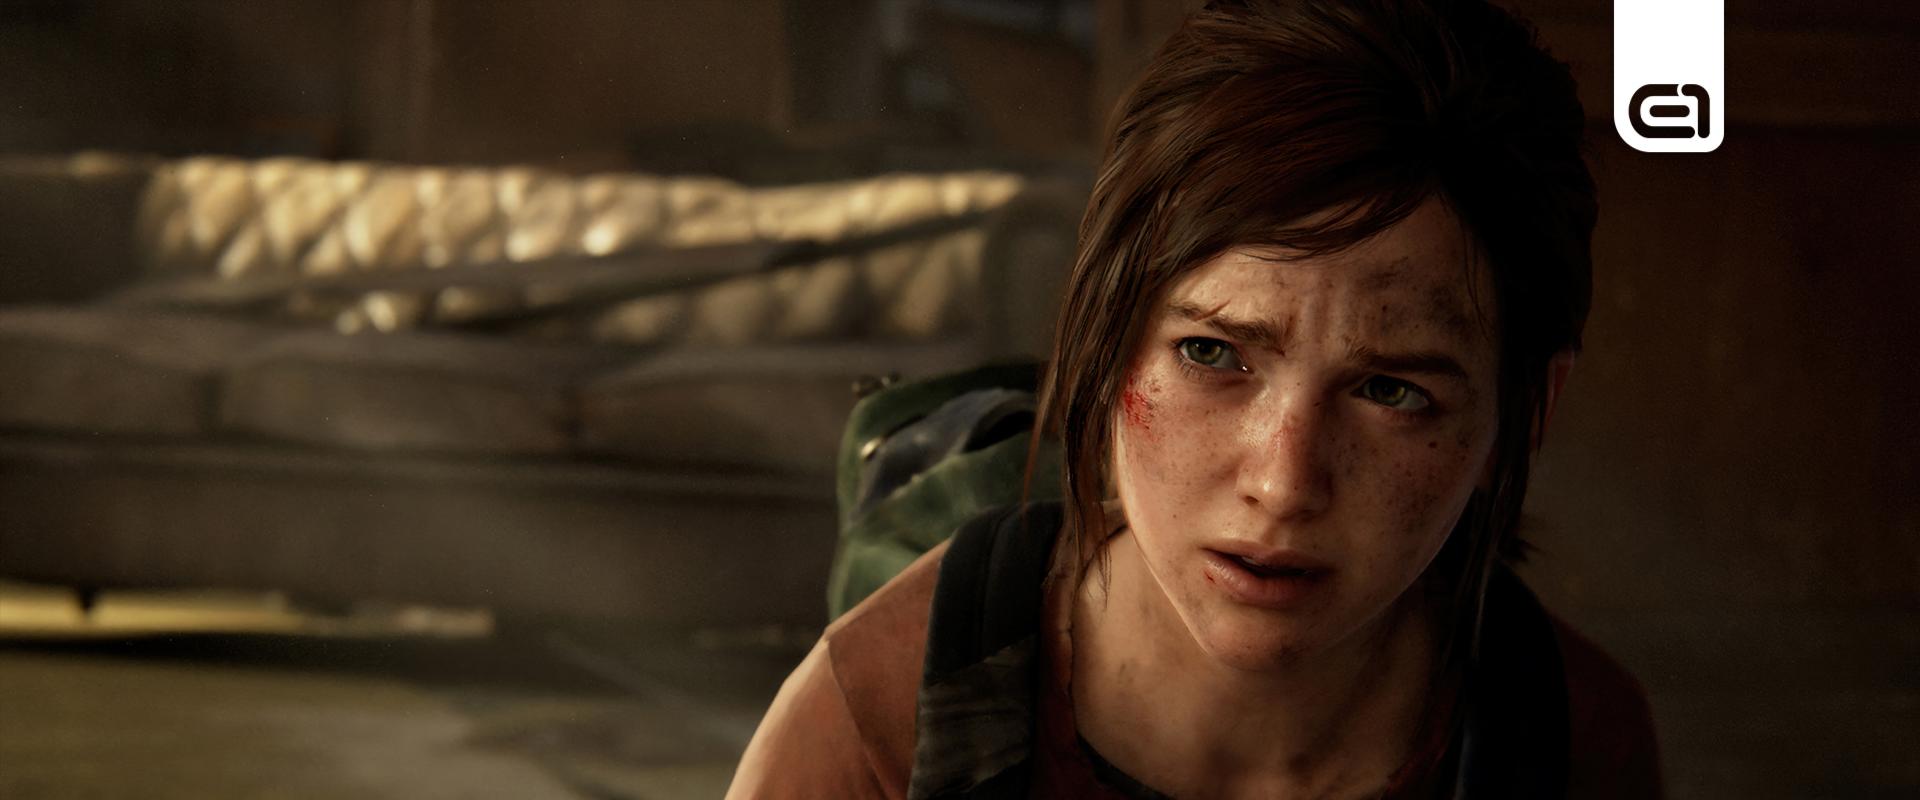 Bejelentették a The Last of Us Part 1 gépigényét